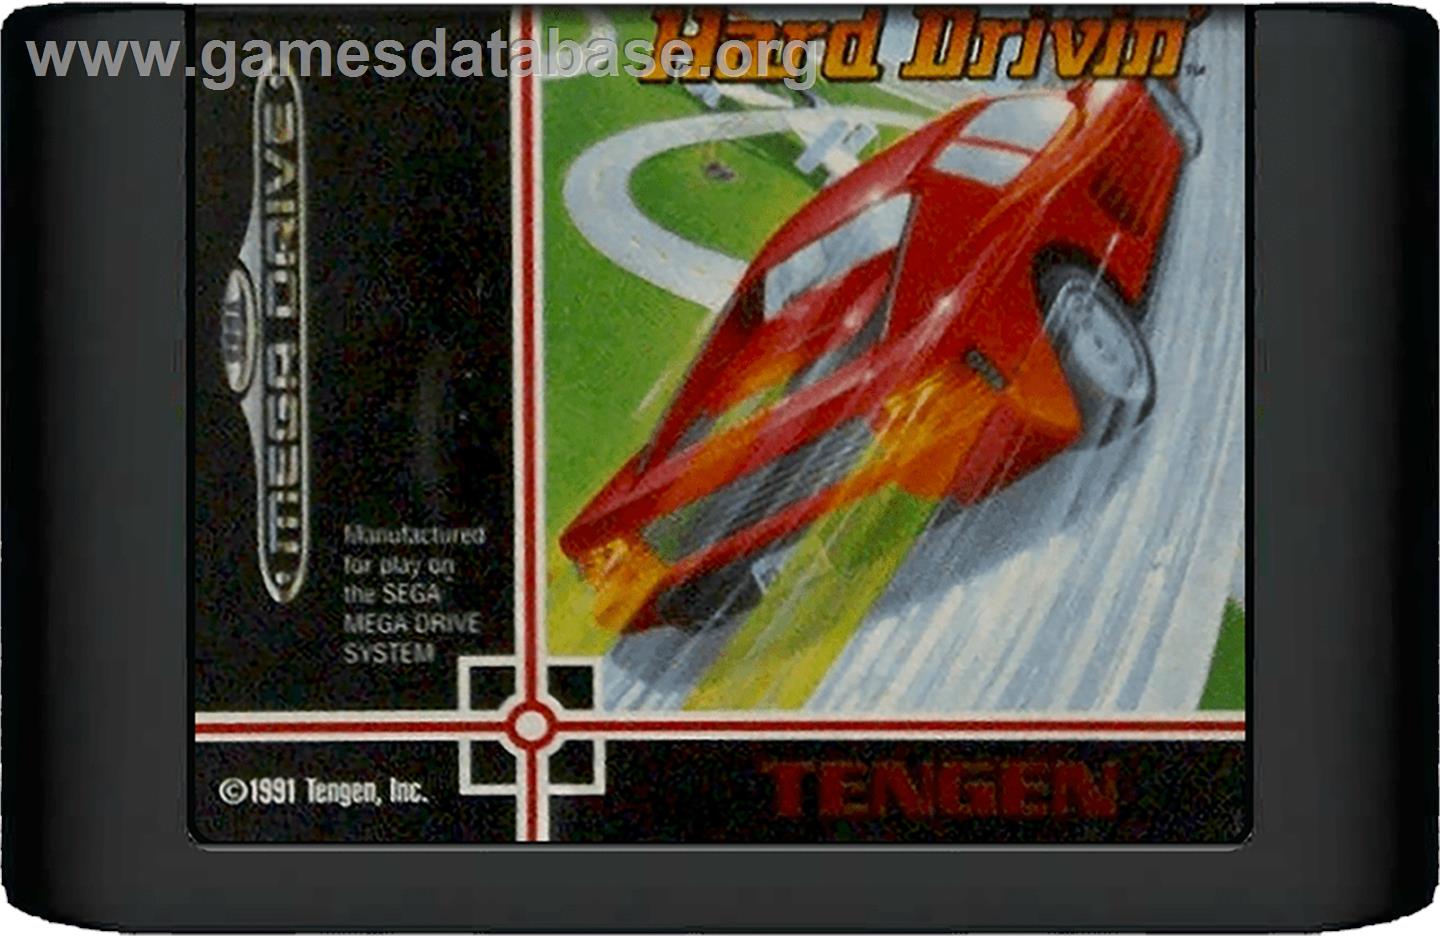 Hard Drivin' - Sega Genesis - Artwork - Cartridge